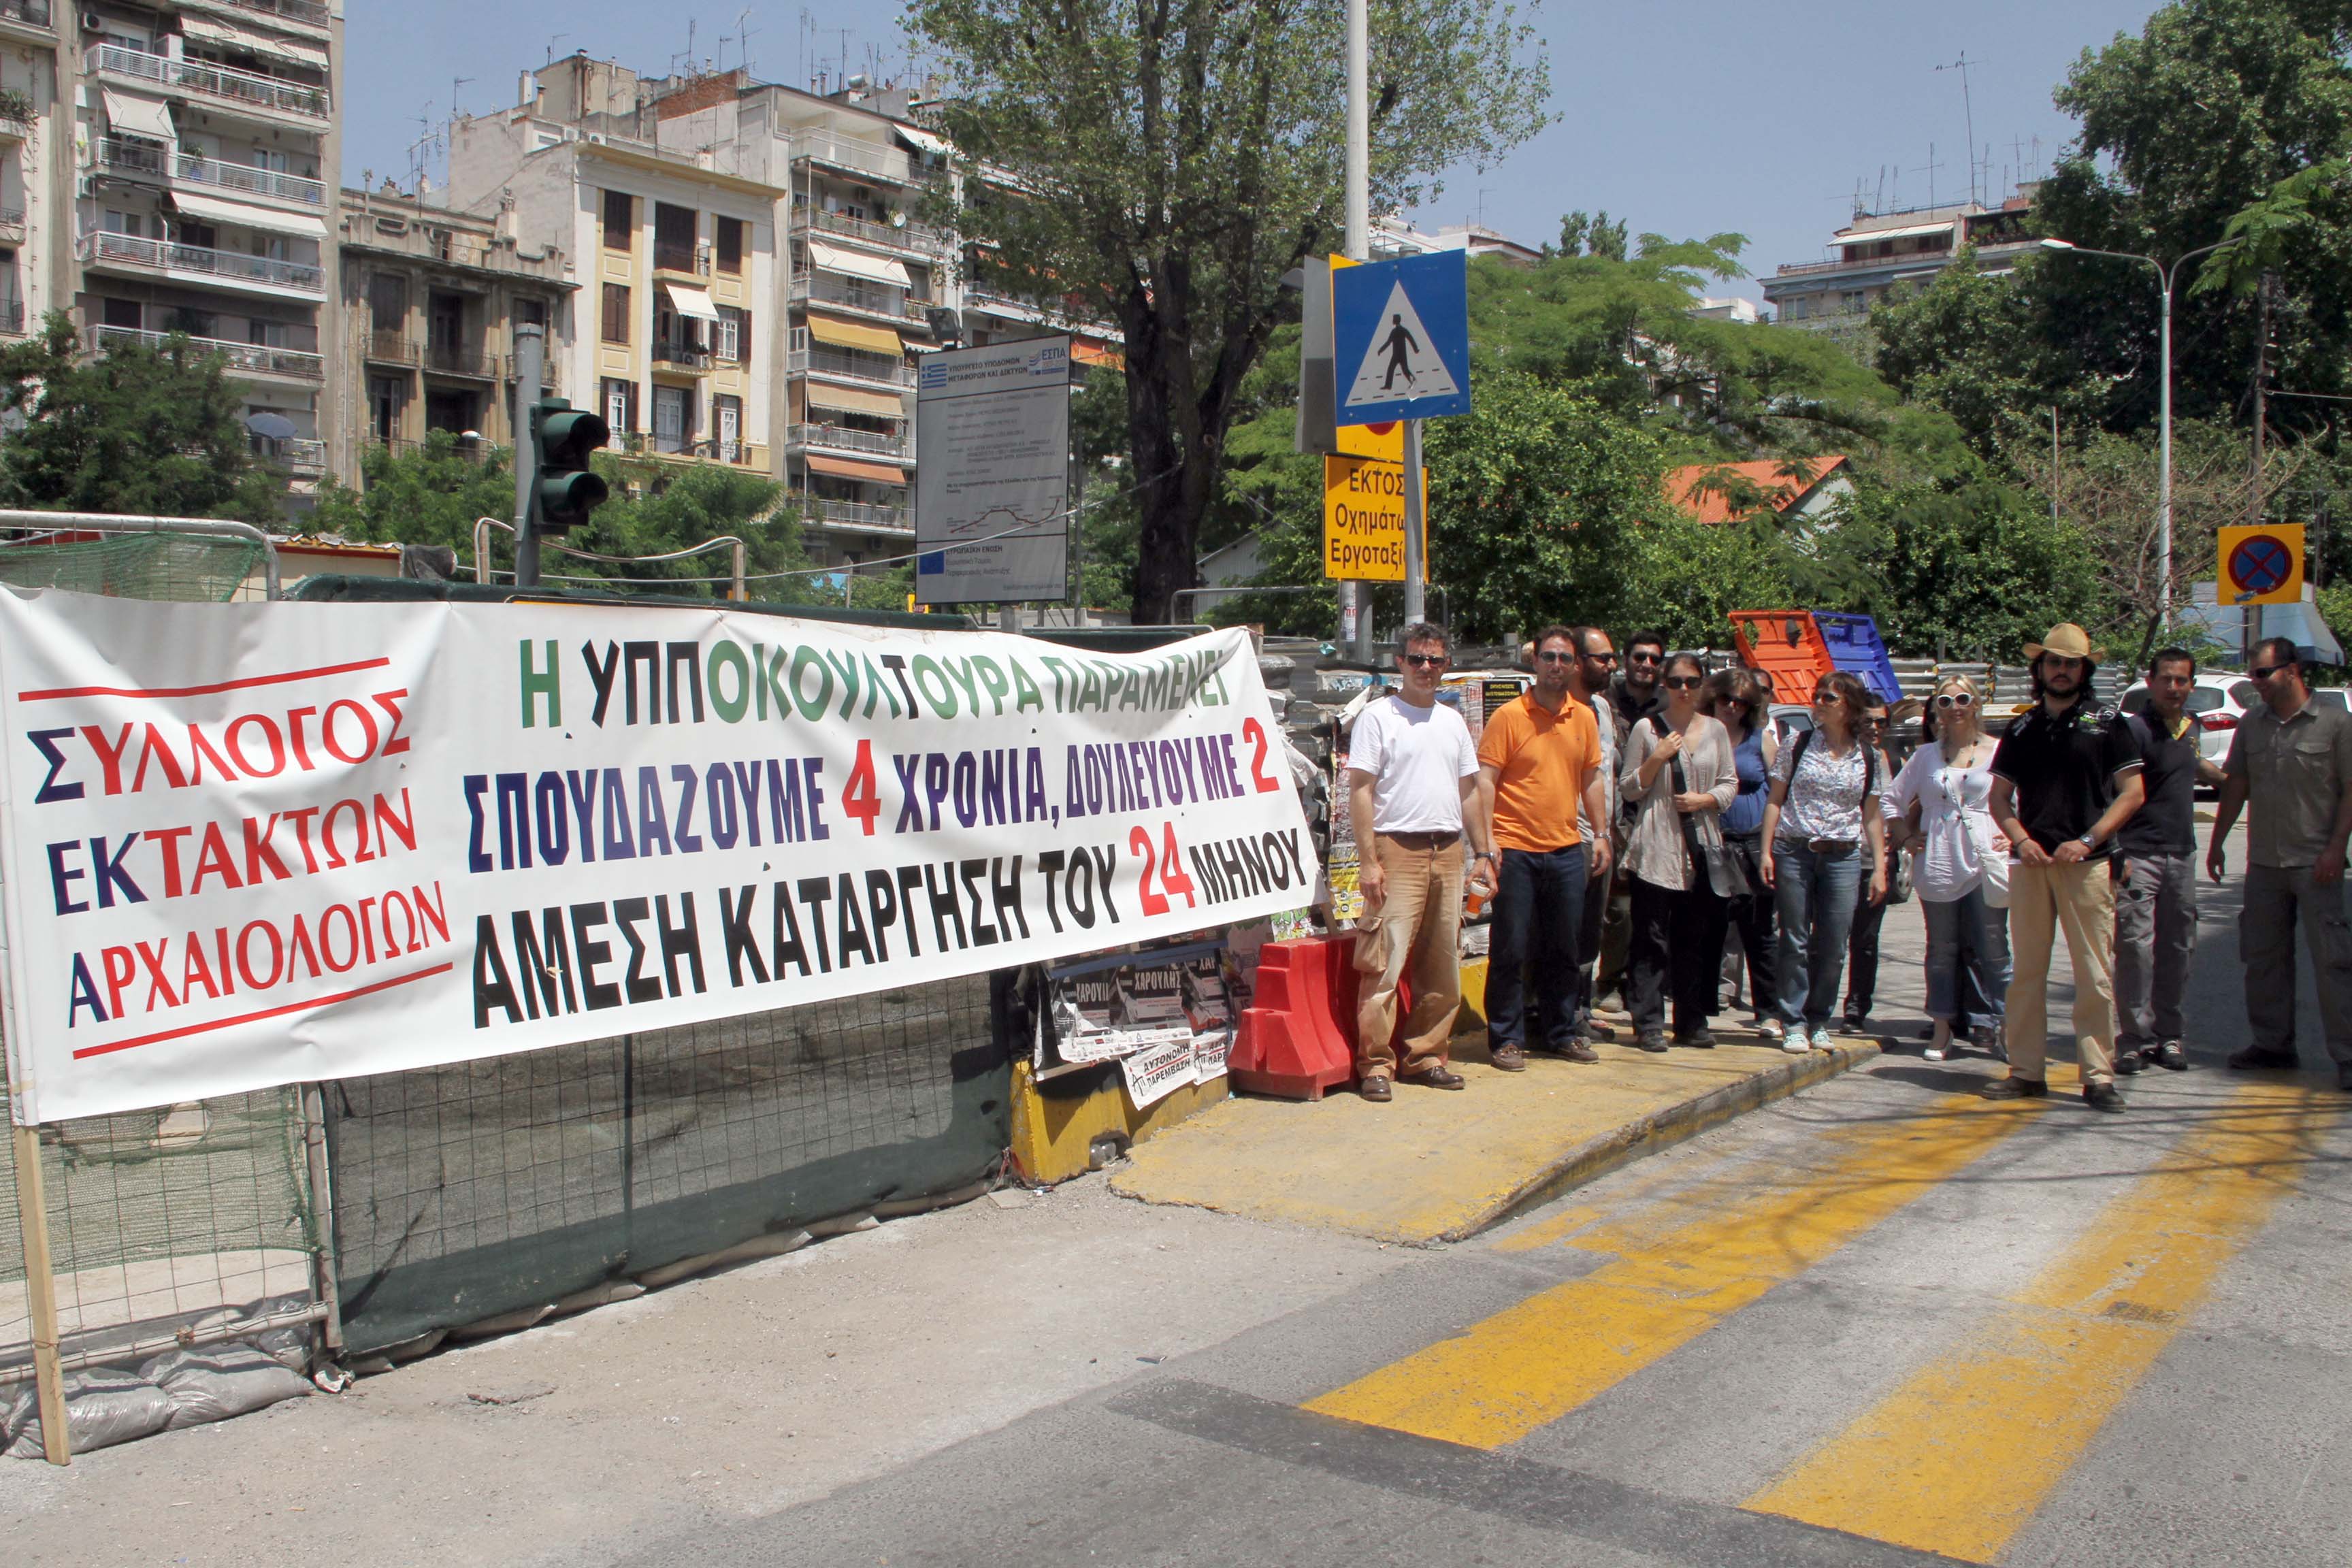 Εμποροι Θεσσαλονίκης: Αναλάβετε τις ευθύνες σας για να τελειώσει το Μετρό